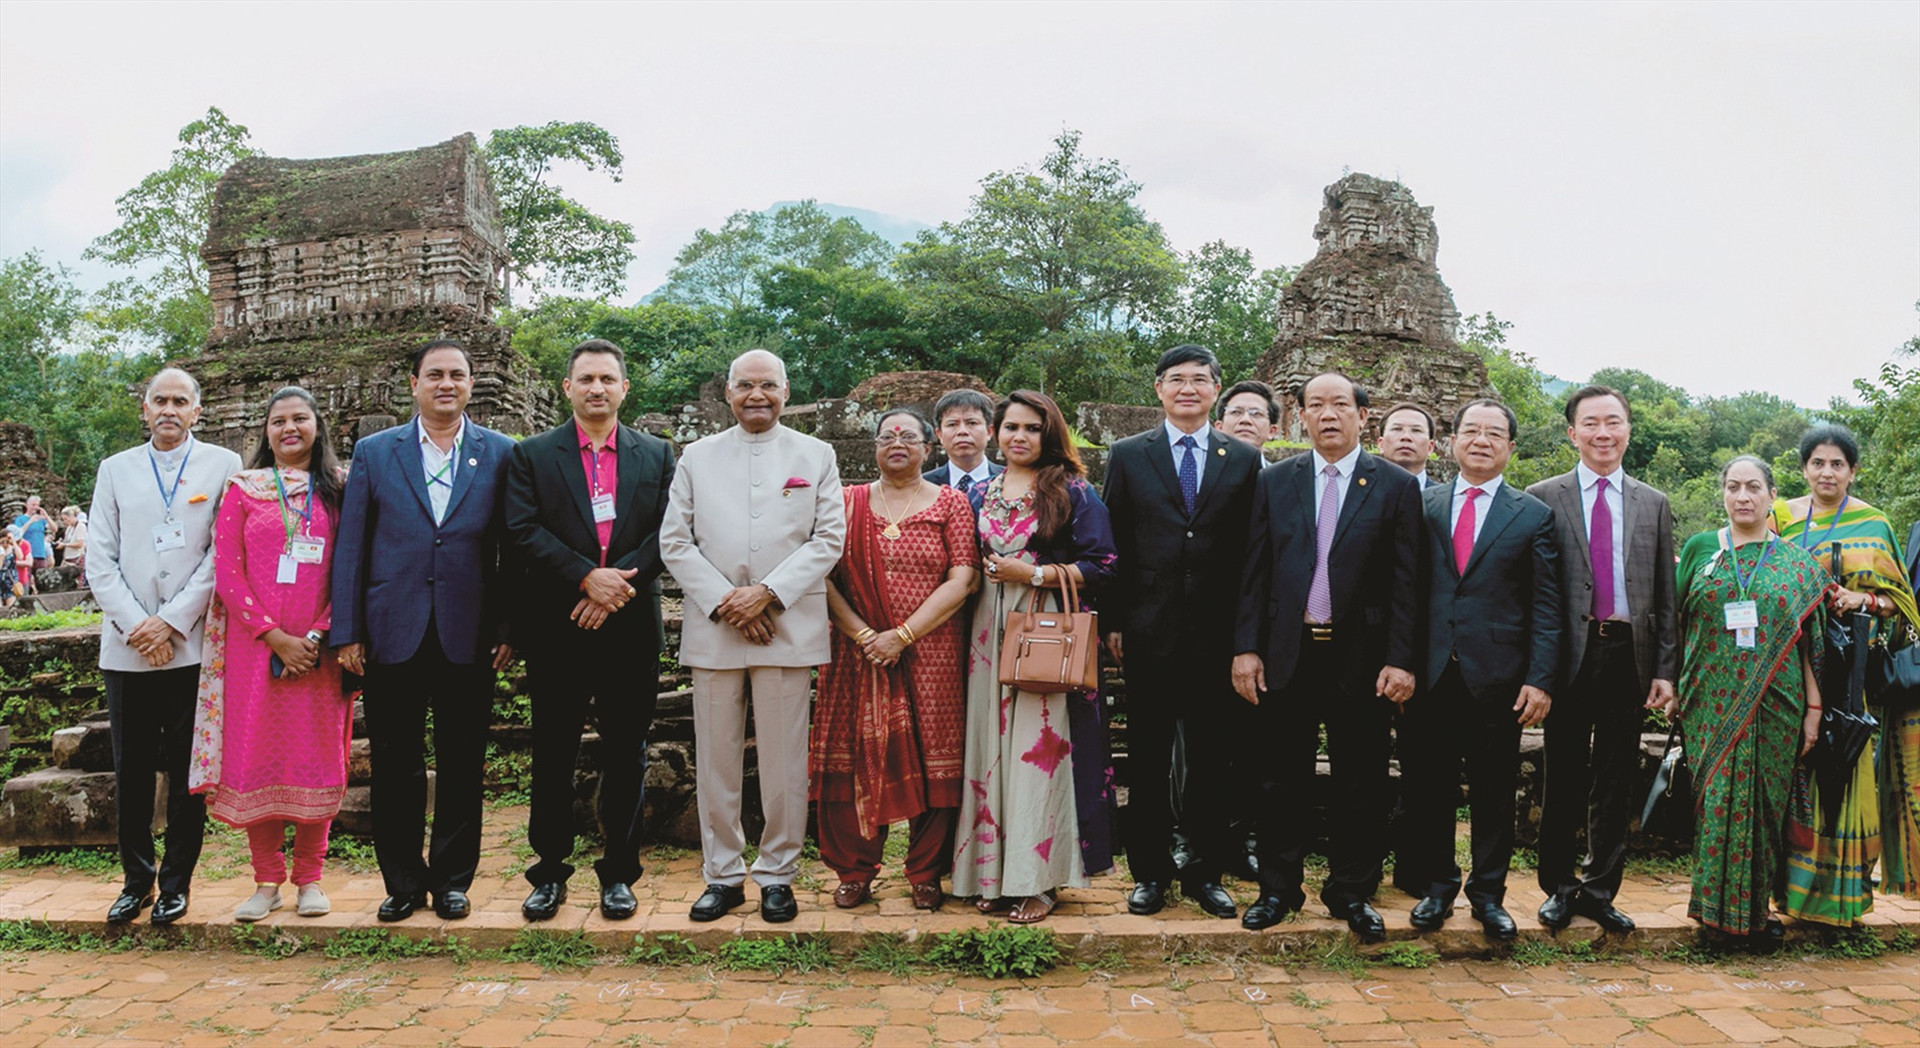 Tổng thống Ấn Độ Ram Nath Kovind thăm Mỹ Sơn và chụp hình lưu niệm với lãnh đạo tỉnh Quảng Nam vào tháng 11.2018. Ảnh: LÊ TRỌNG KHANG